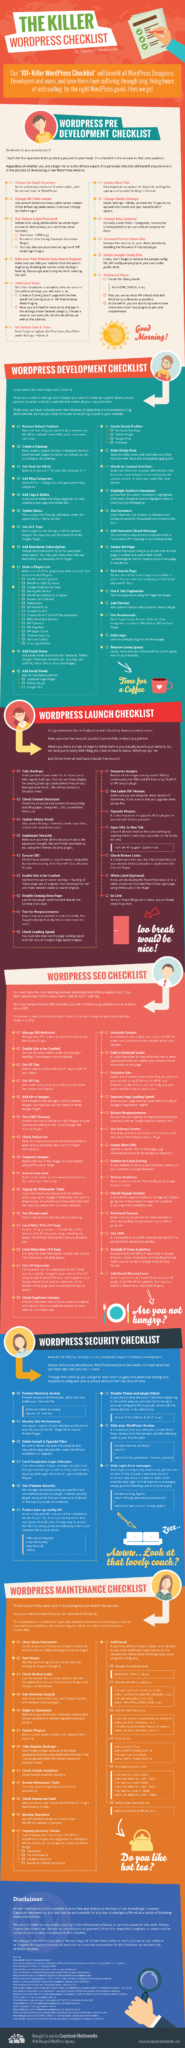 wordpress checklist infographic